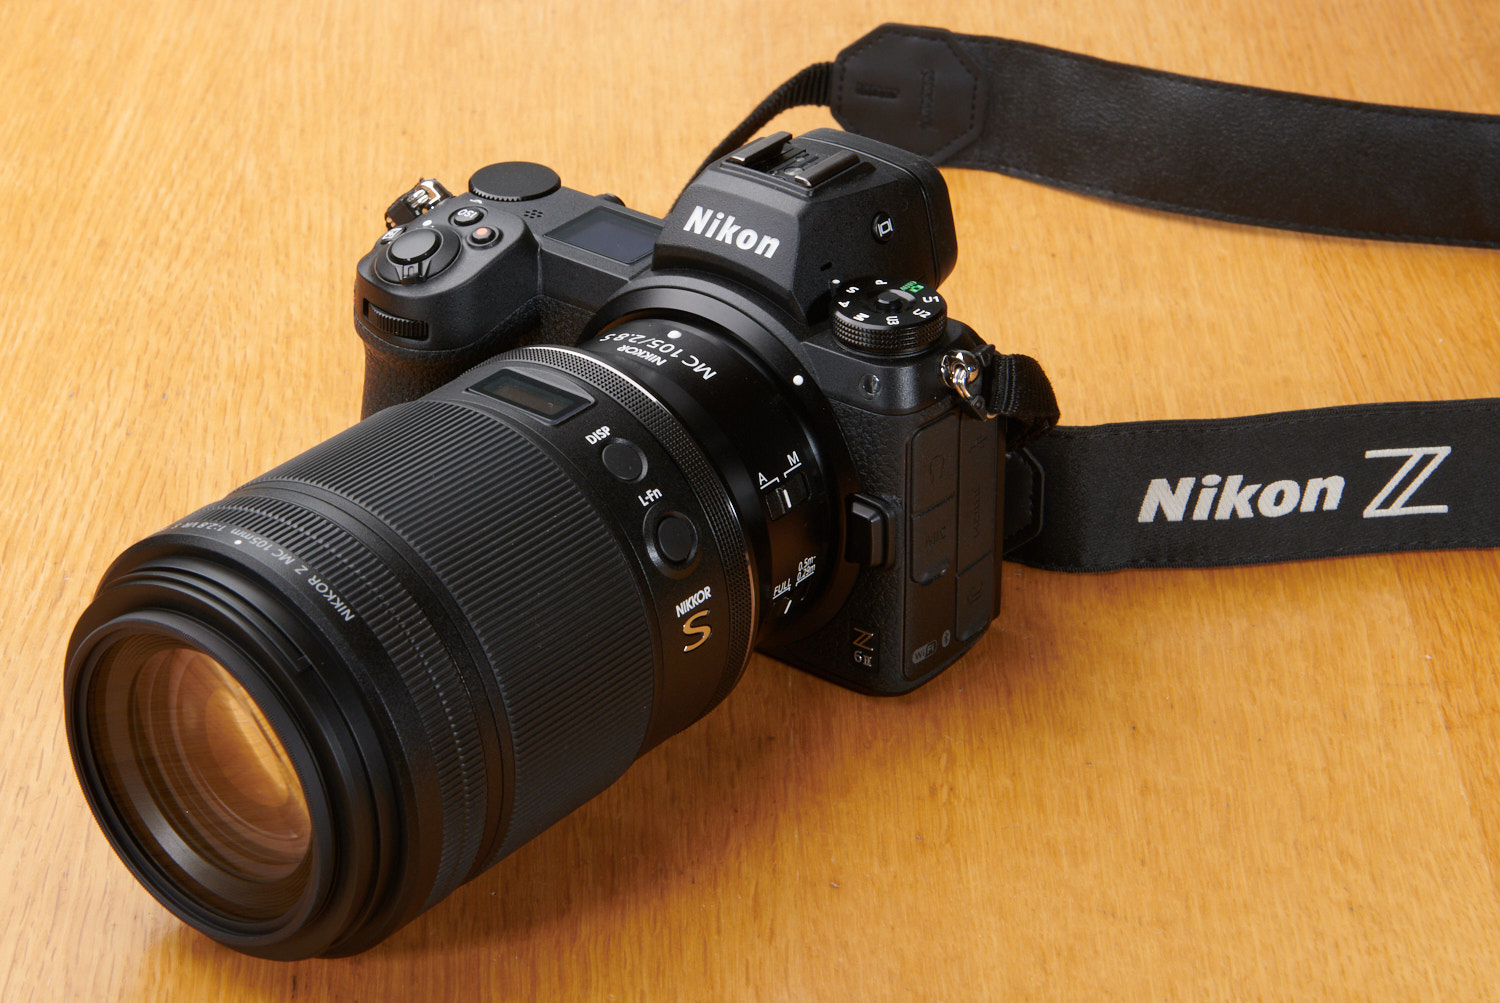 NIKKOR Z MC 105mm f/2.8 VR S with Nikon Z6ii